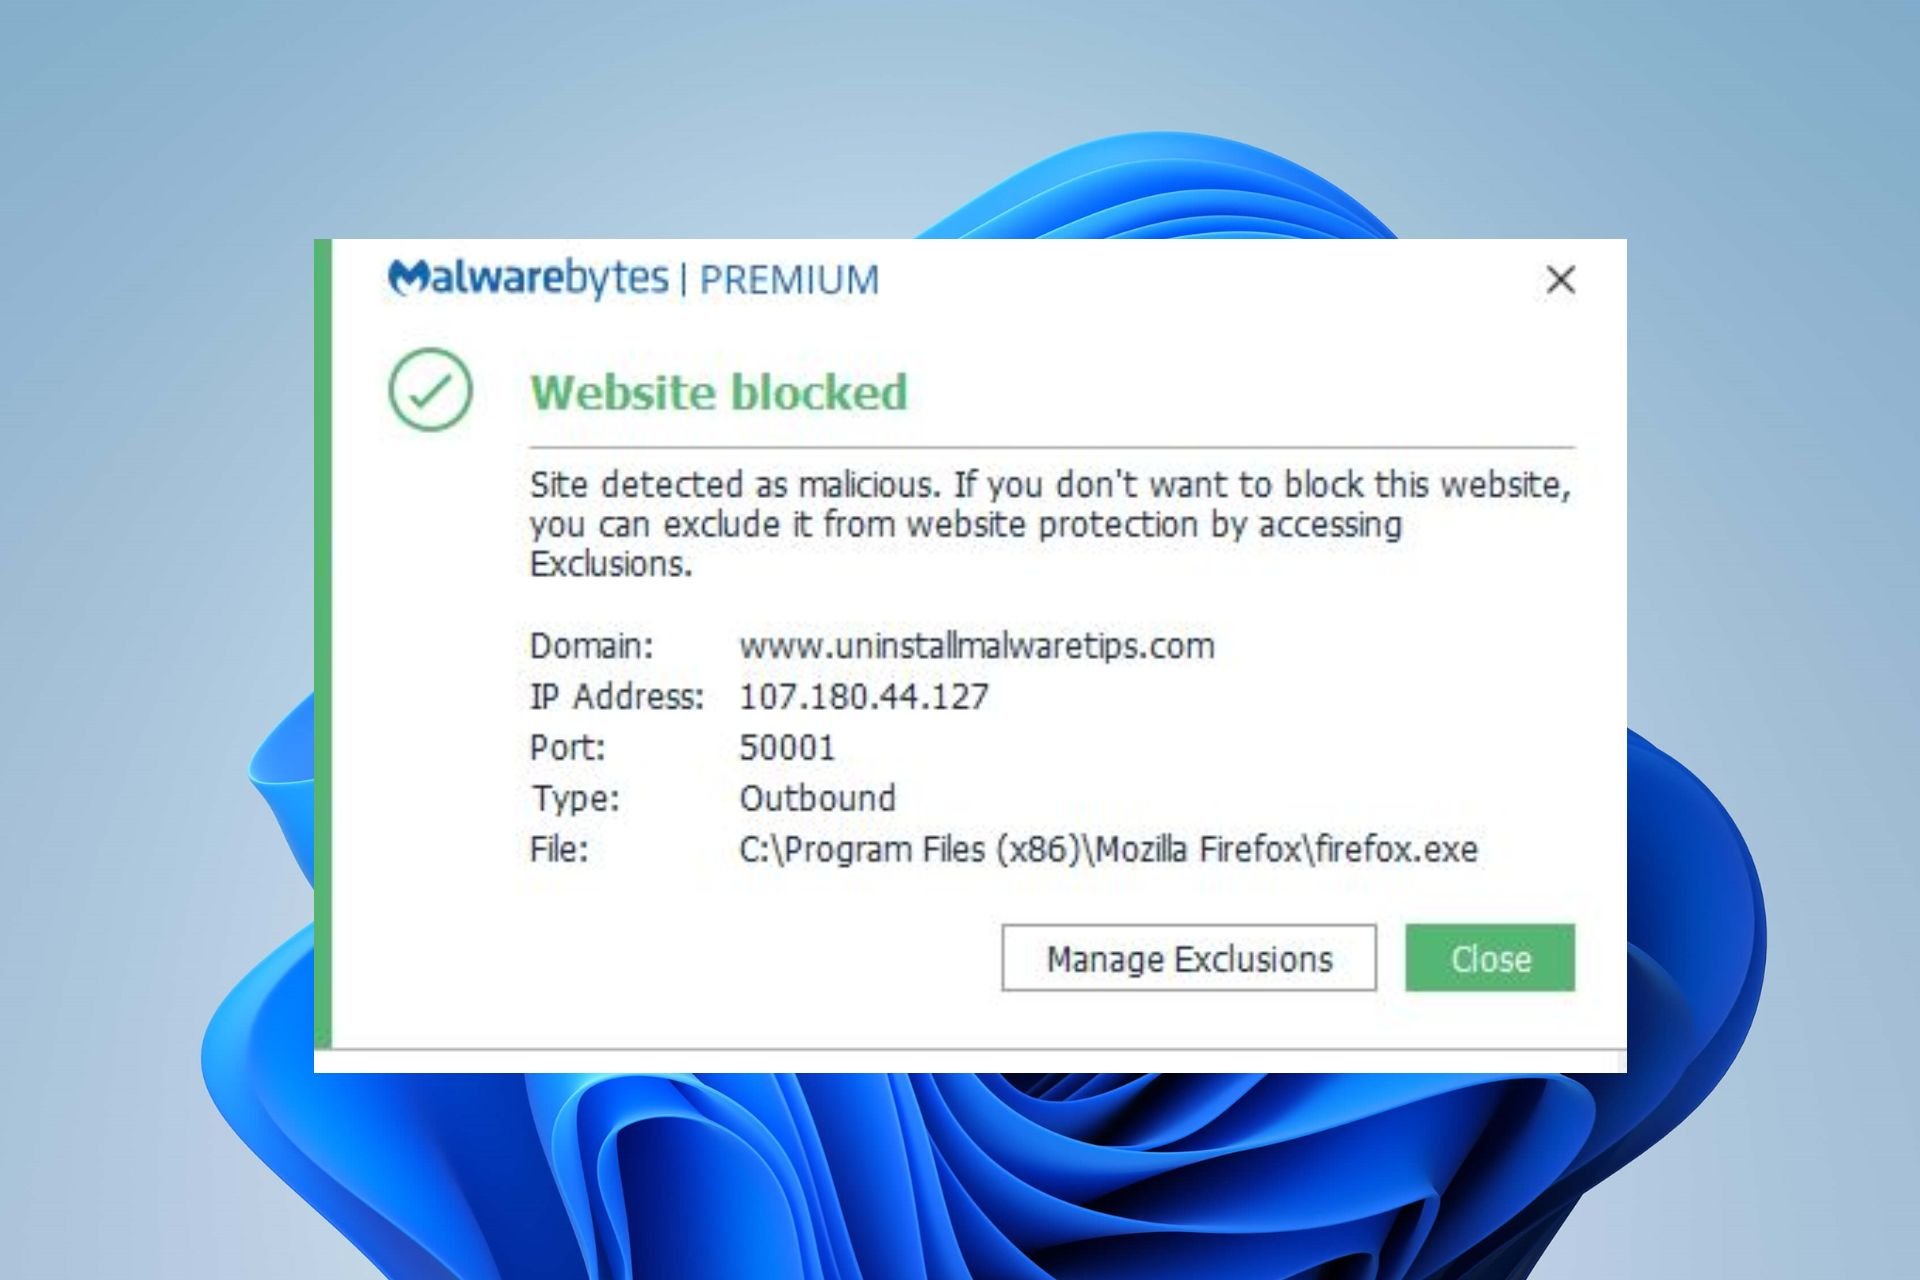 マルウェアバイトのウェブサイトがブロックされ、ポップアップが表示され続ける